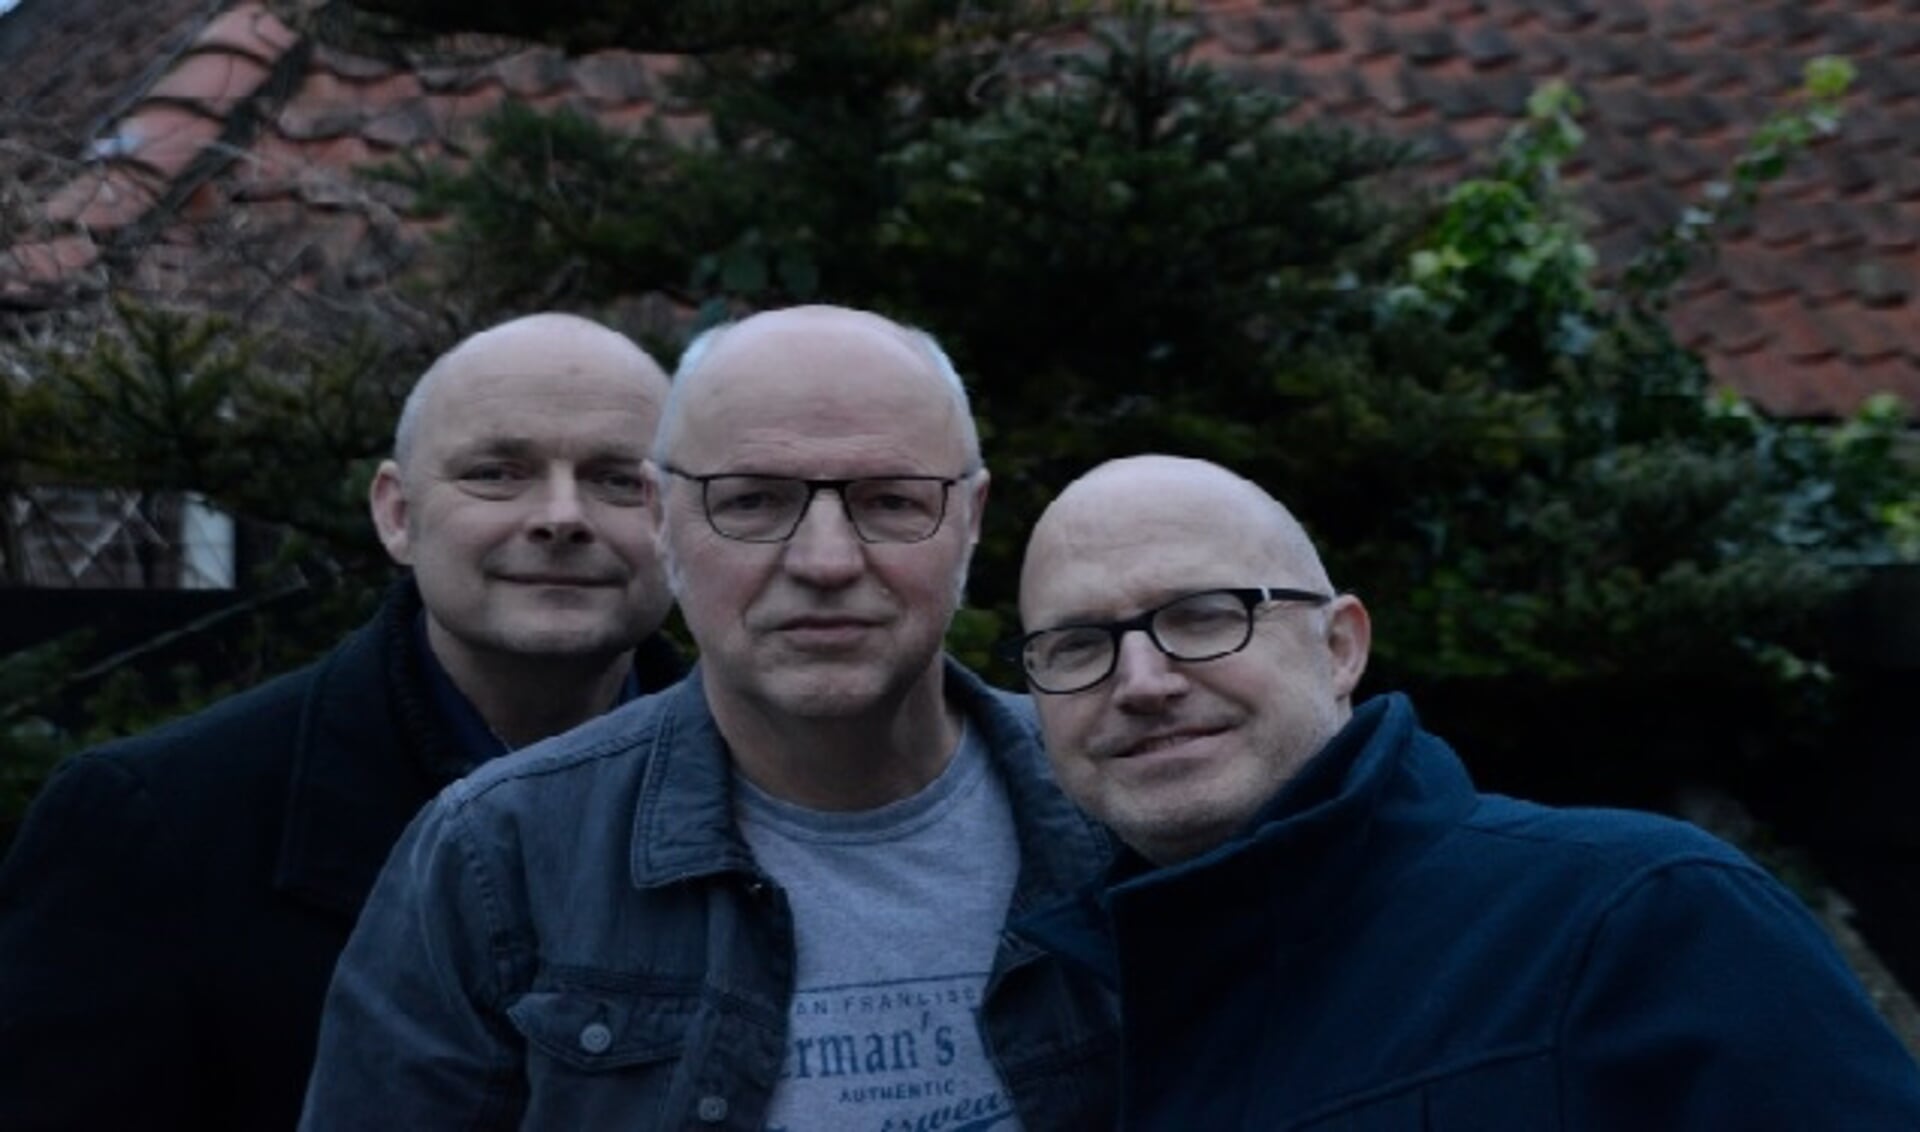 De mannen van Bald